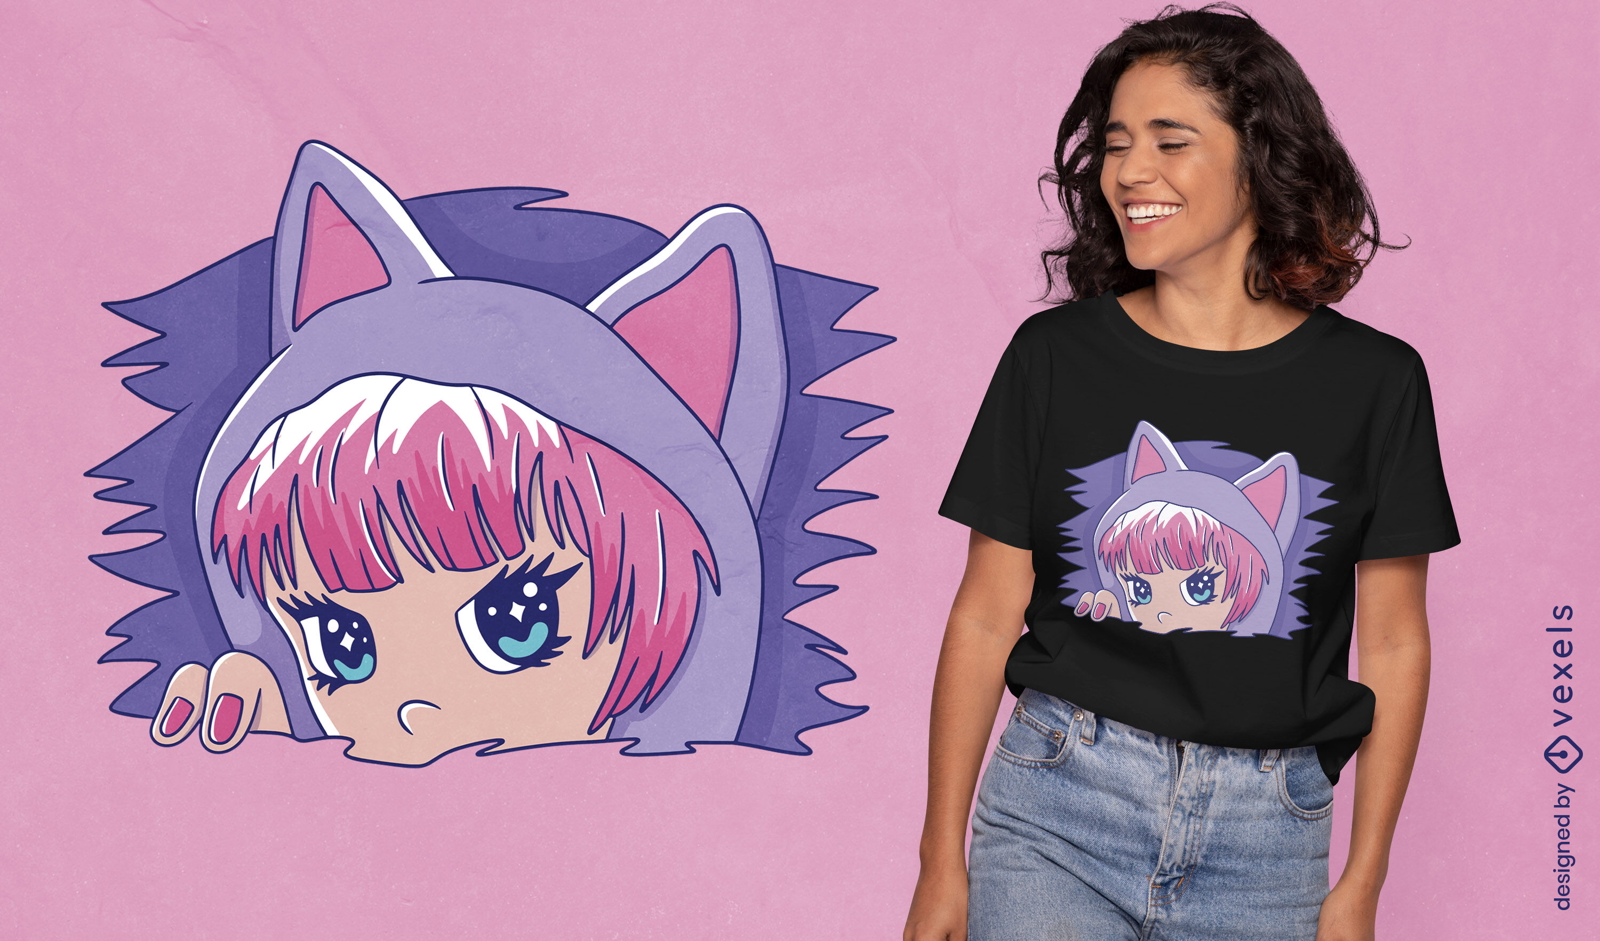 Dise?o de camiseta de chica anime con orejas de gatito.